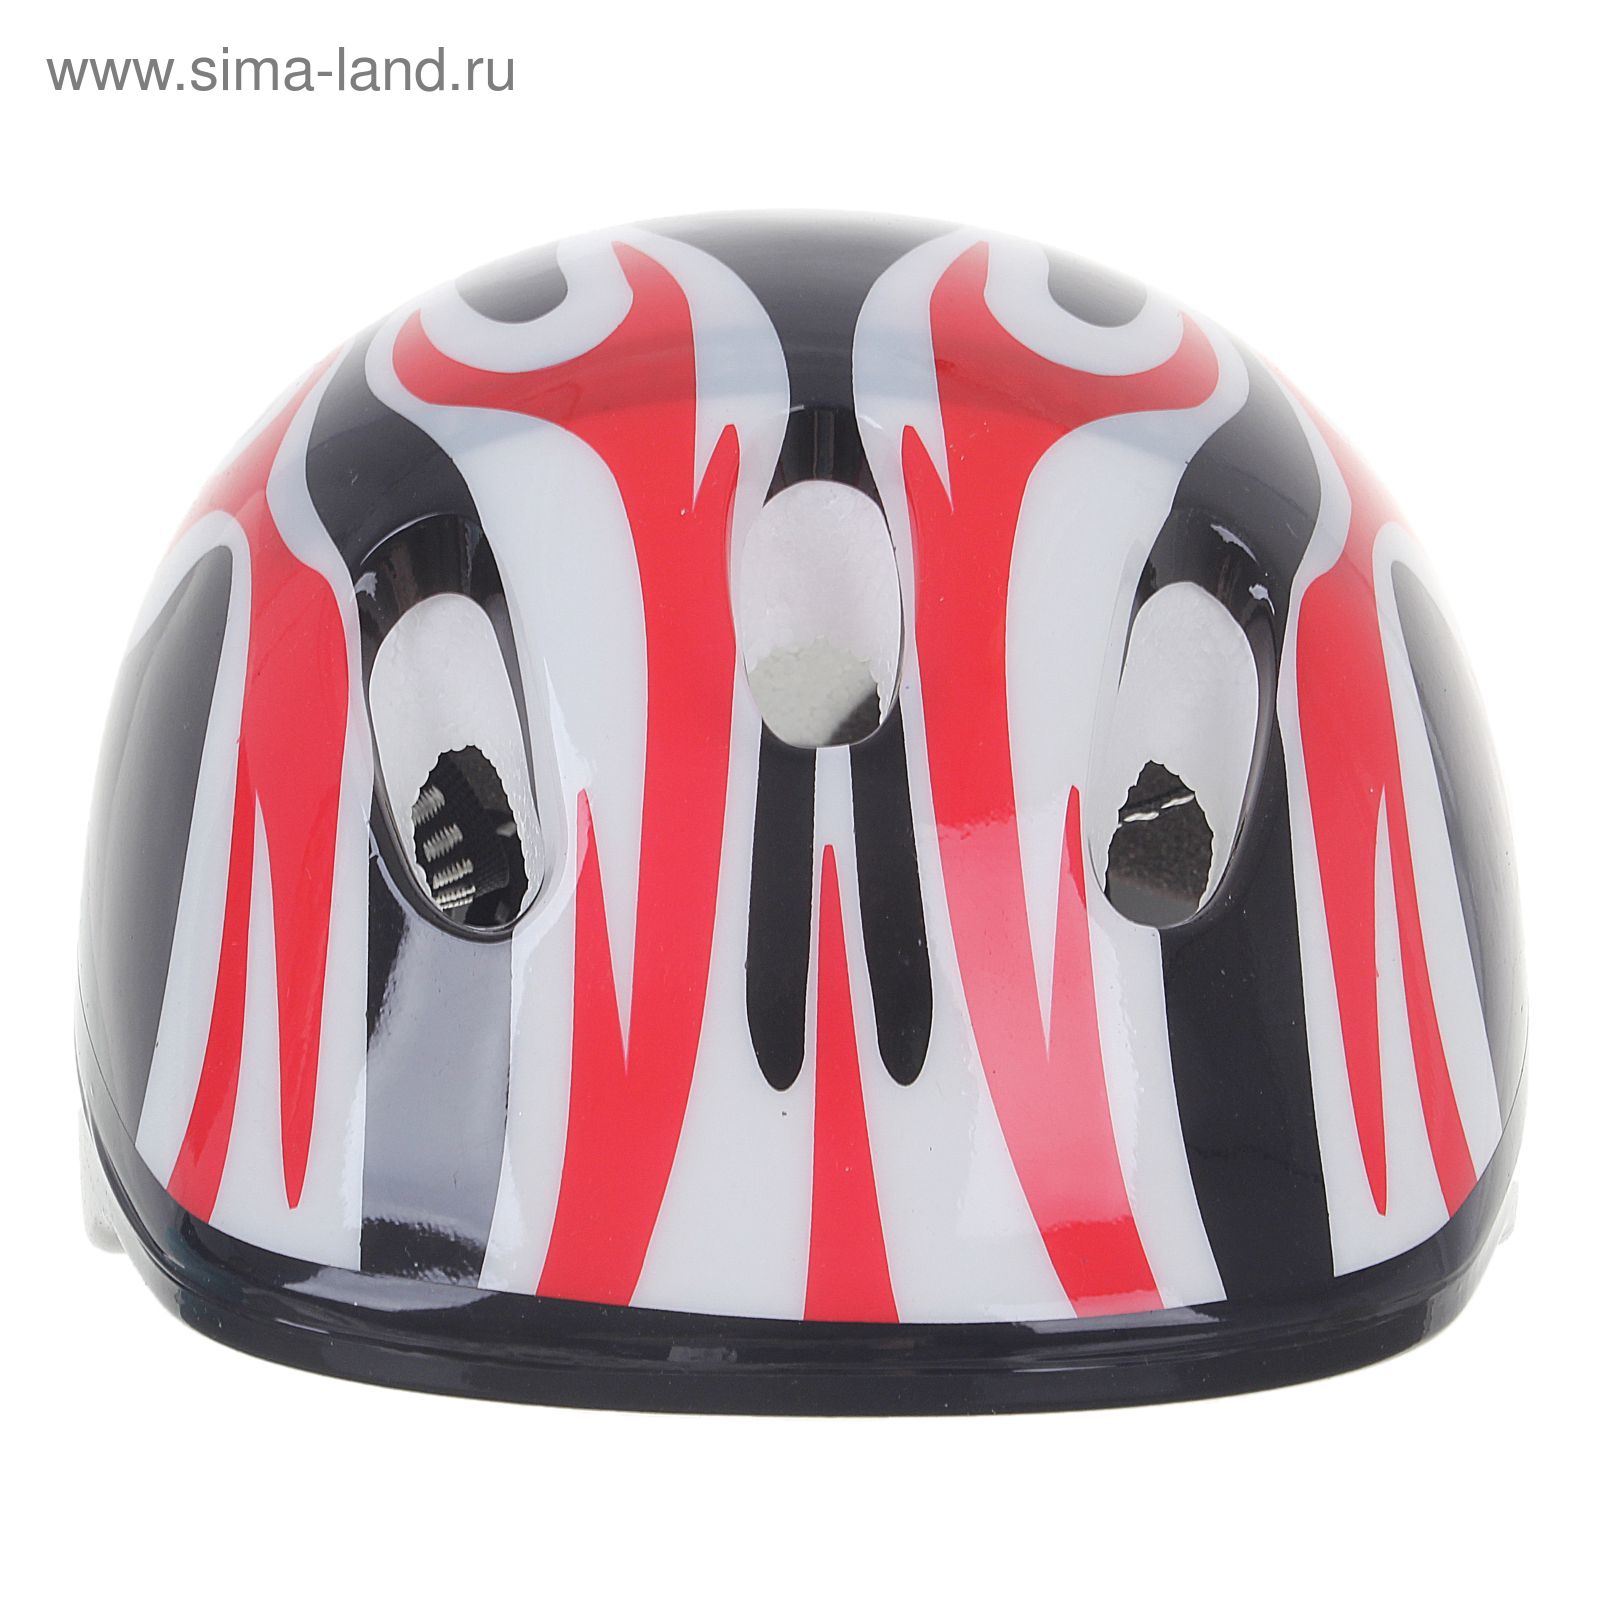 Шлем защитный детский OT-H6, размер M (55-58 см), цвет: черный